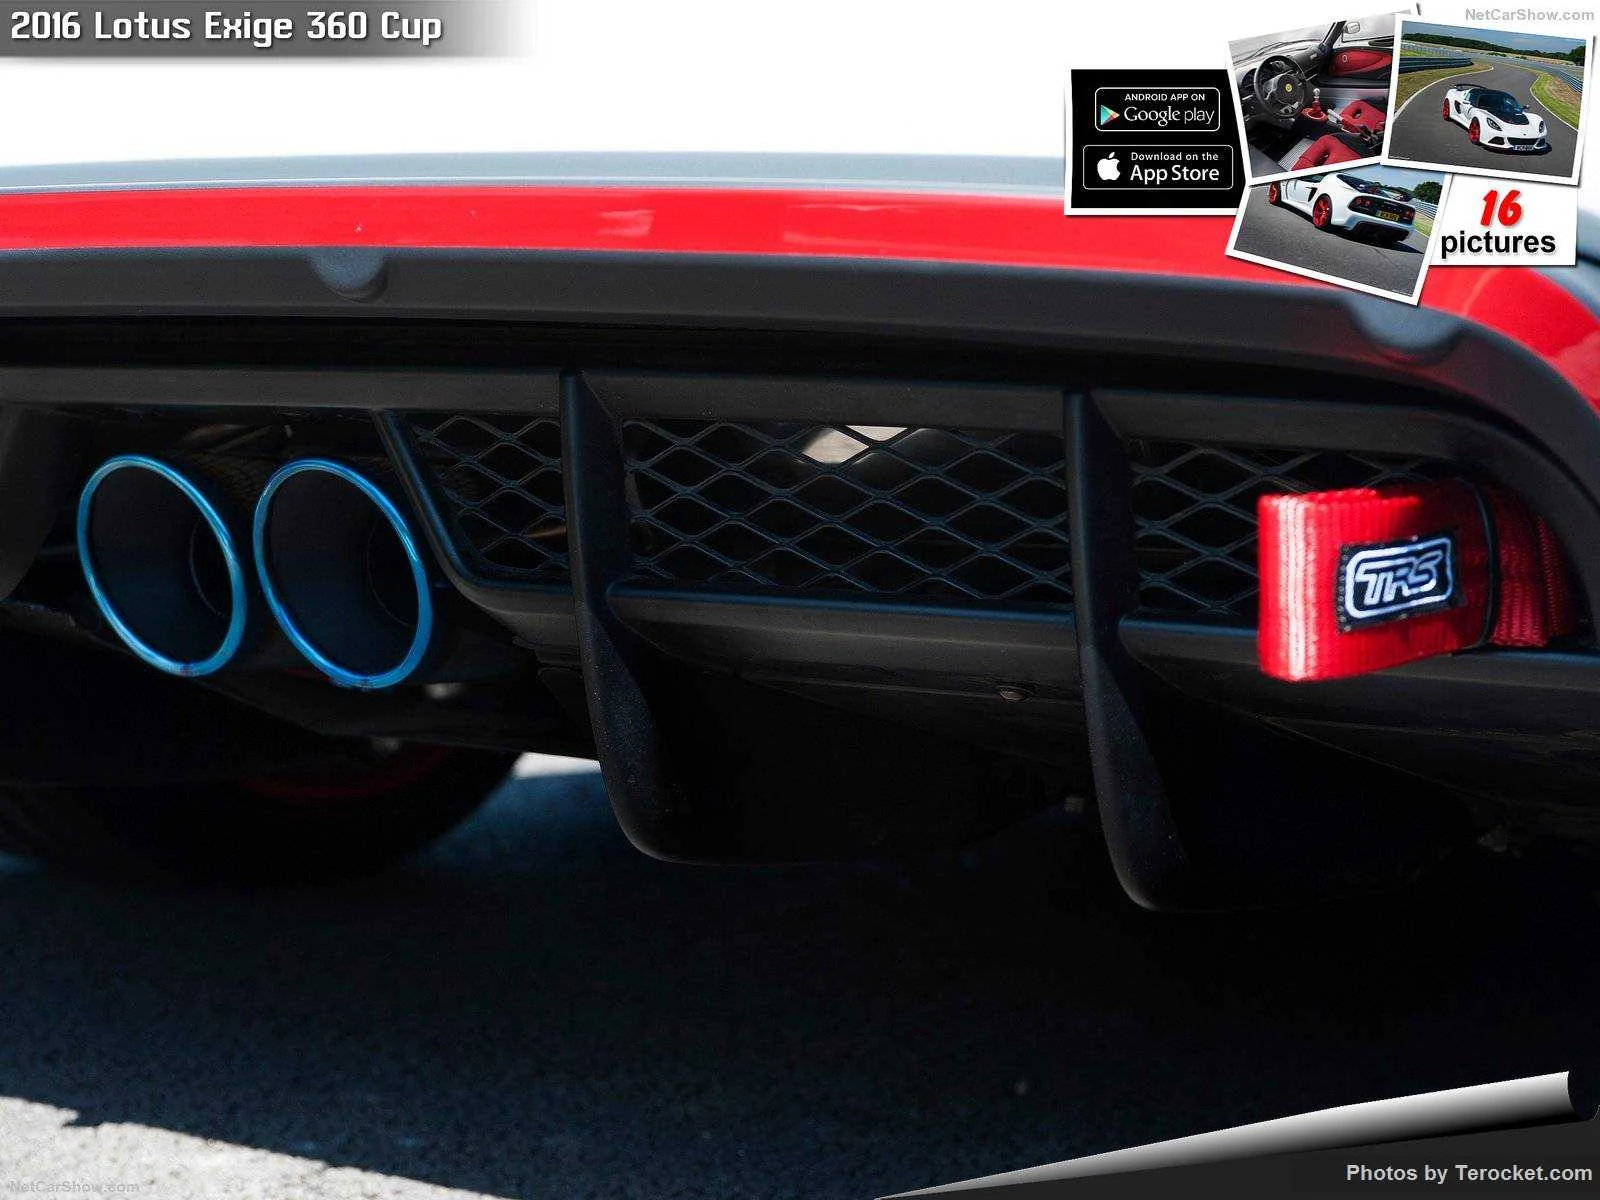 Hình ảnh siêu xe Lotus Exige 360 Cup 2016 & nội ngoại thất